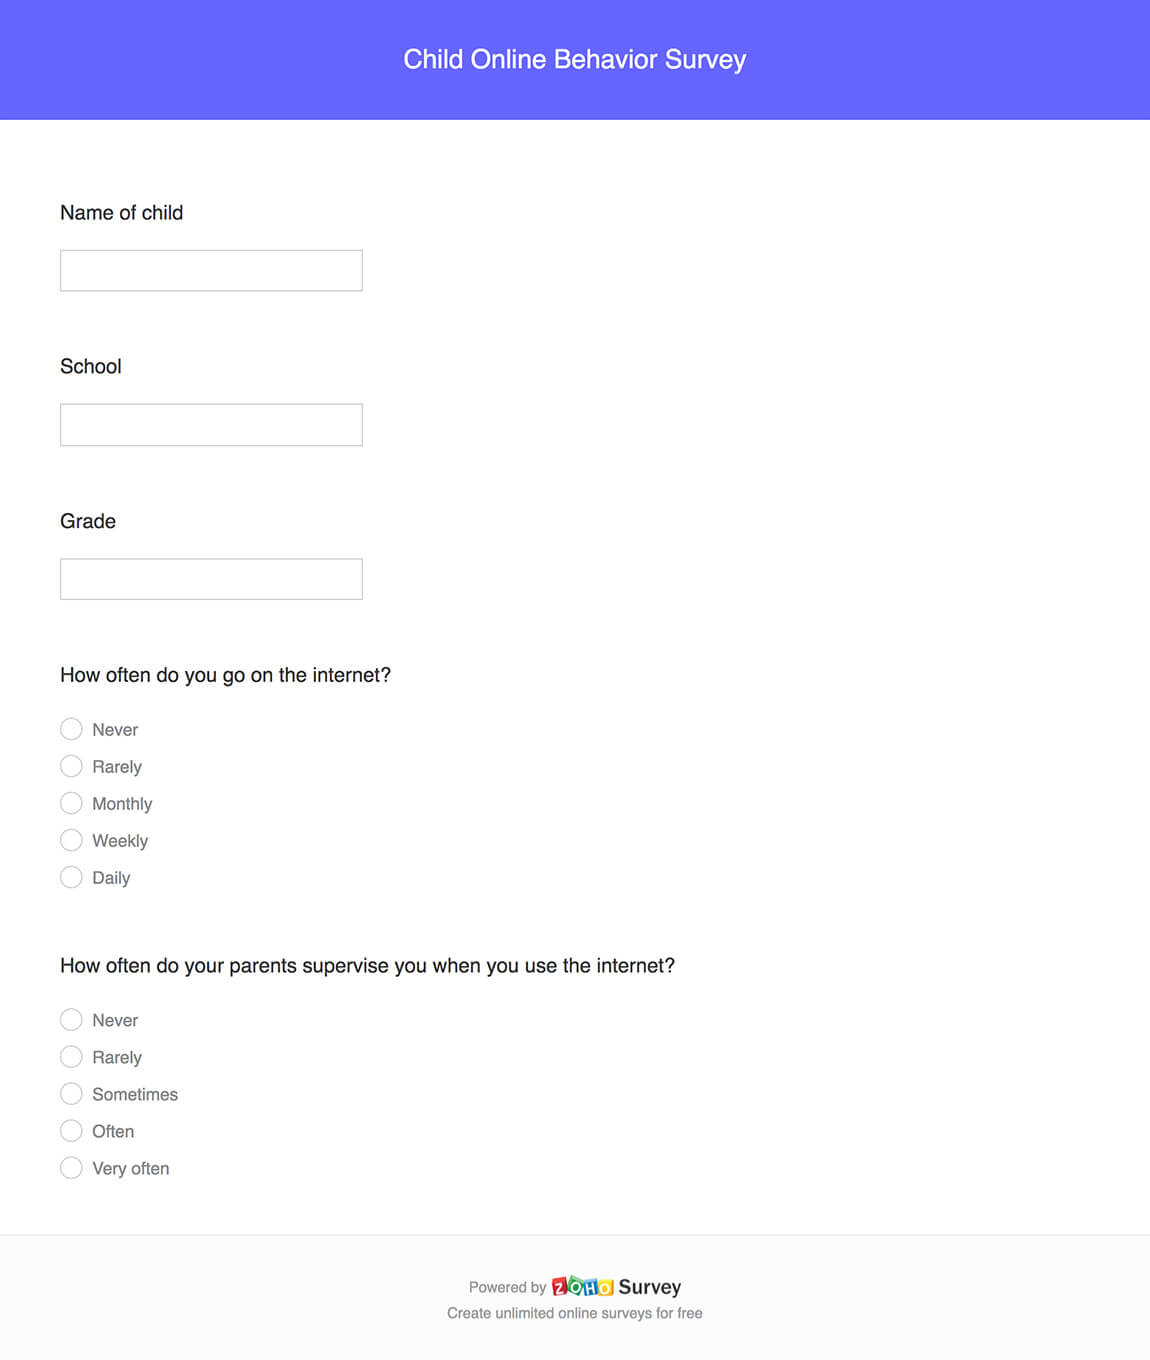 Child online behavior survey questionnaire template